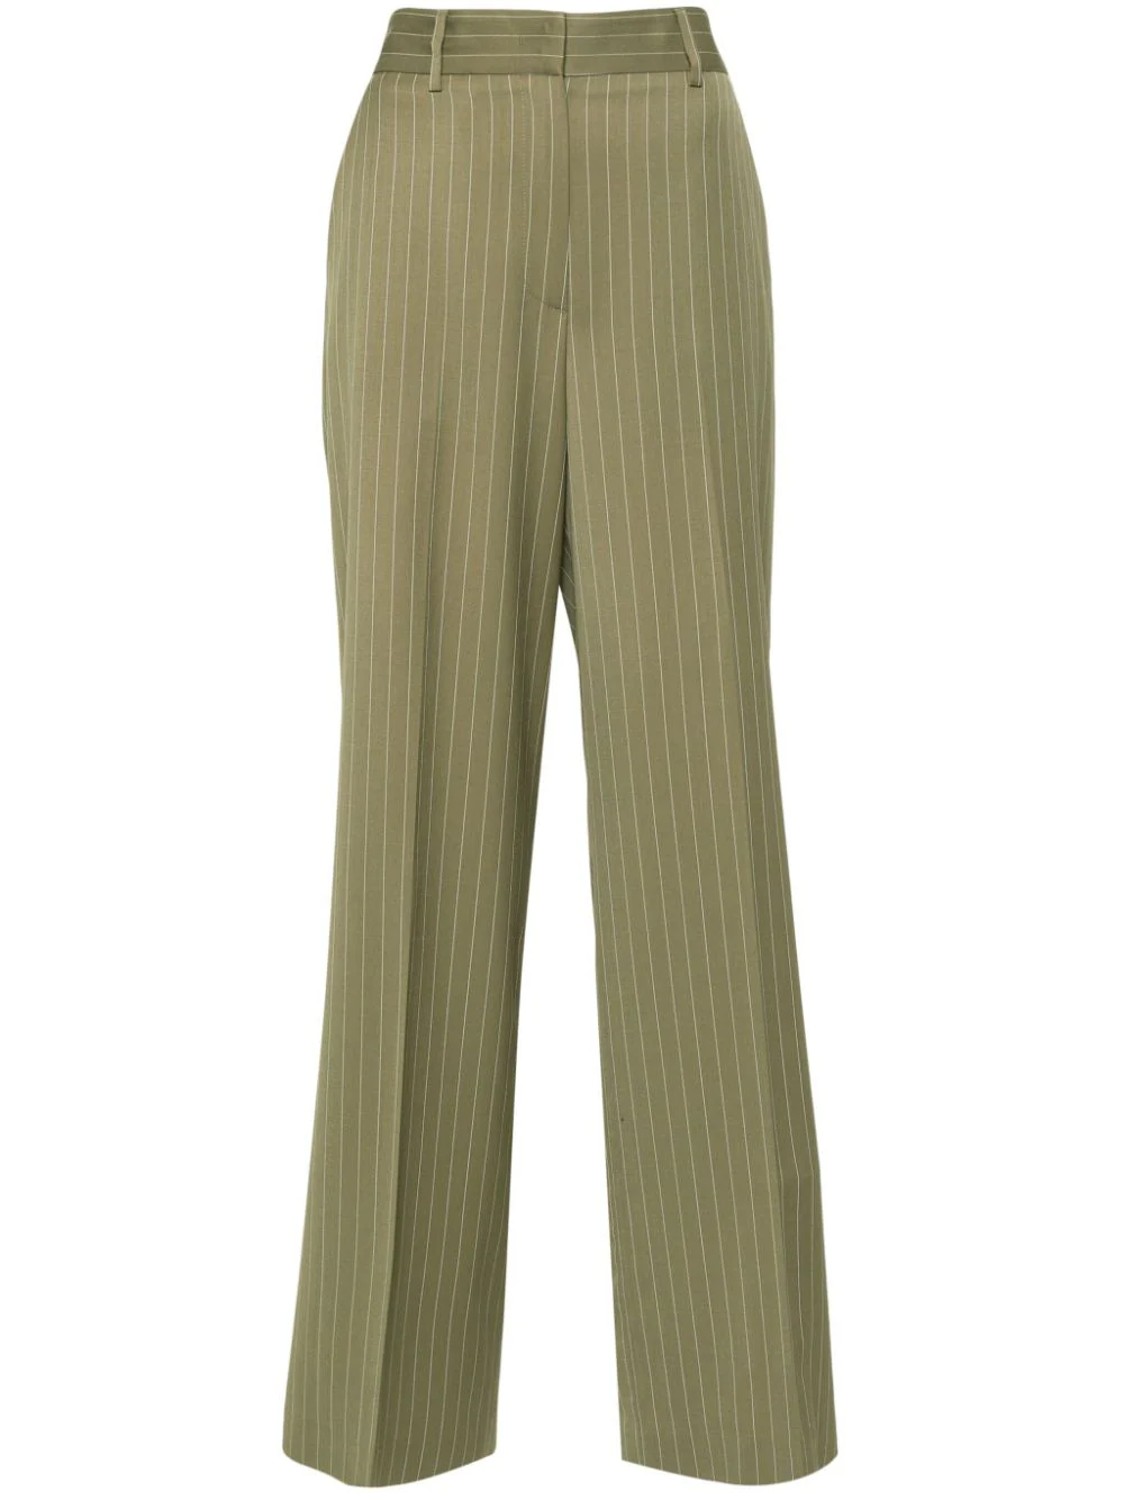 shop MSGM  Pantaloni: Pantaloni MSGM, modello dritto, vita alta, tasche laterali e posteriori, in fresco di lana, gessato.

Composizione: 100% lana. number 2686